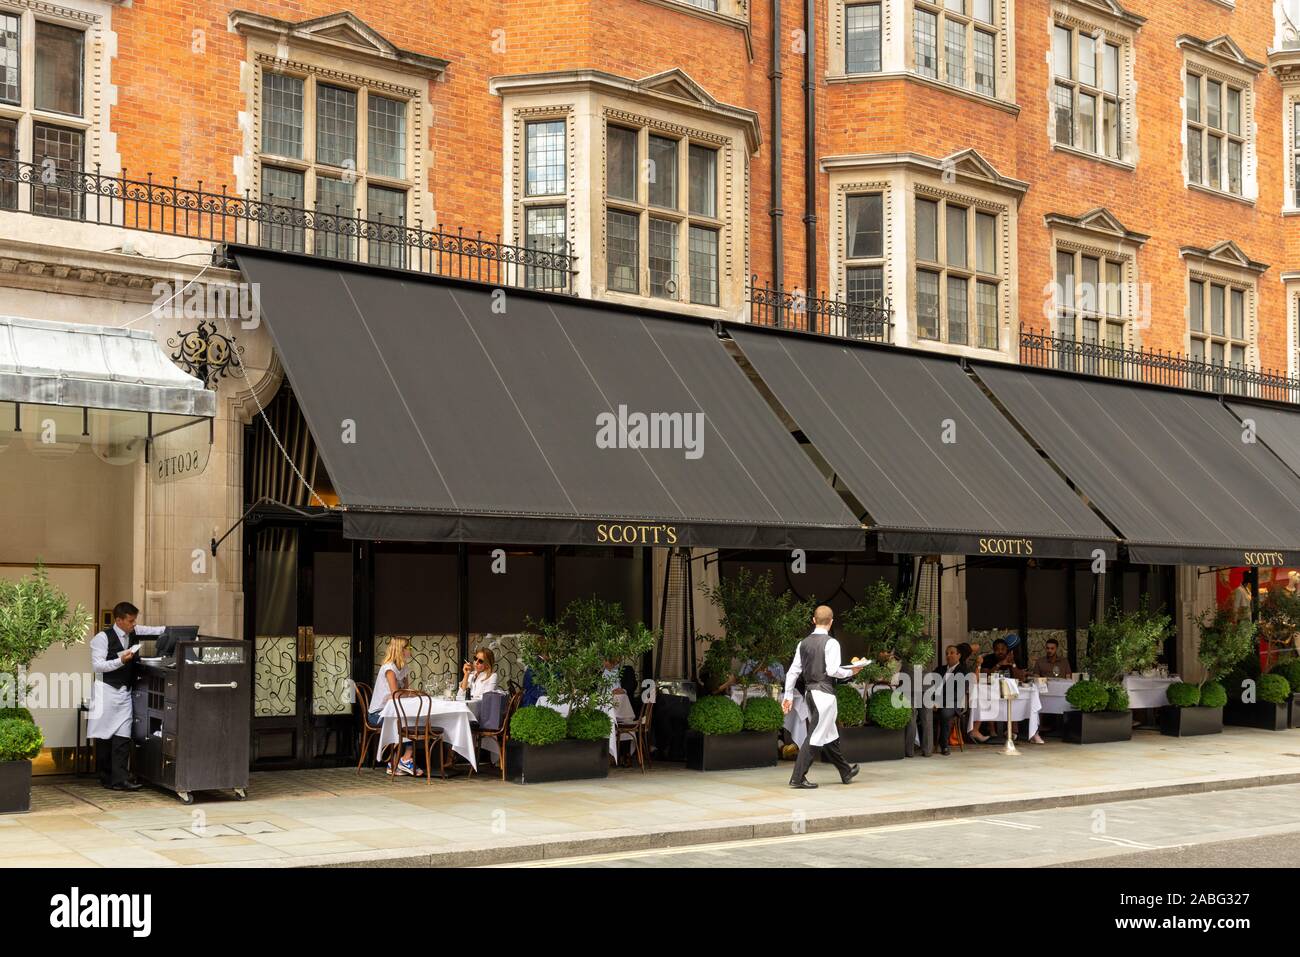 Scott's restaurant, Mount Street, Mayfair, London, UK Stock Photo